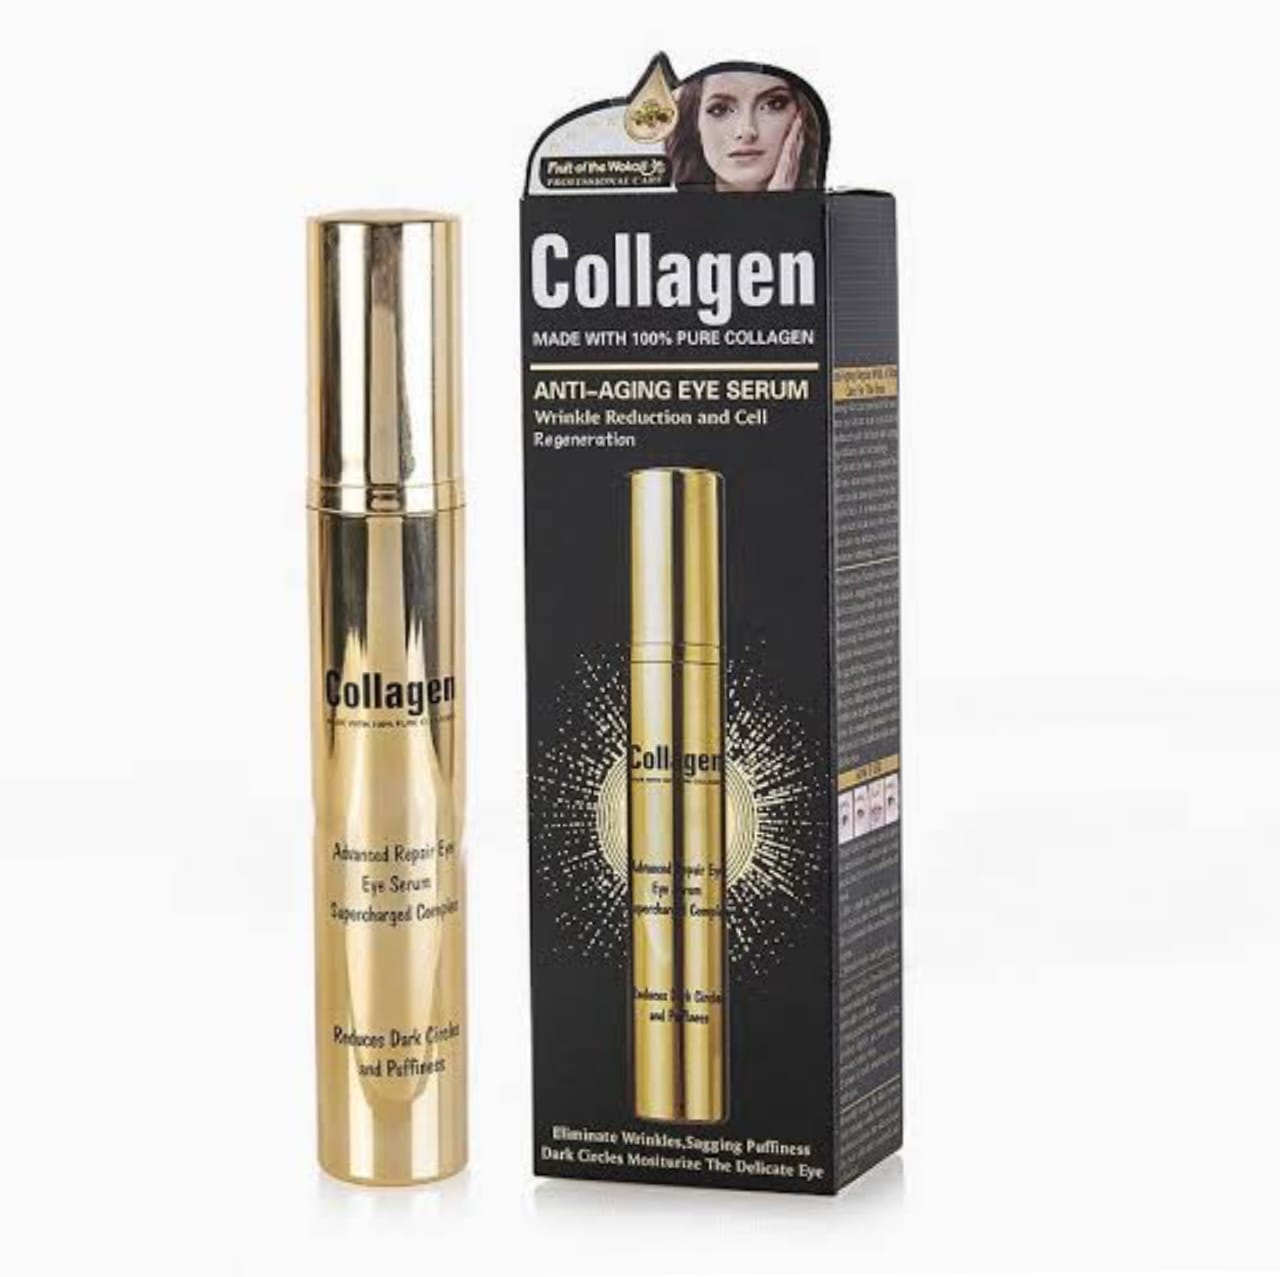 Collagen Anti-Aging Eye Serum